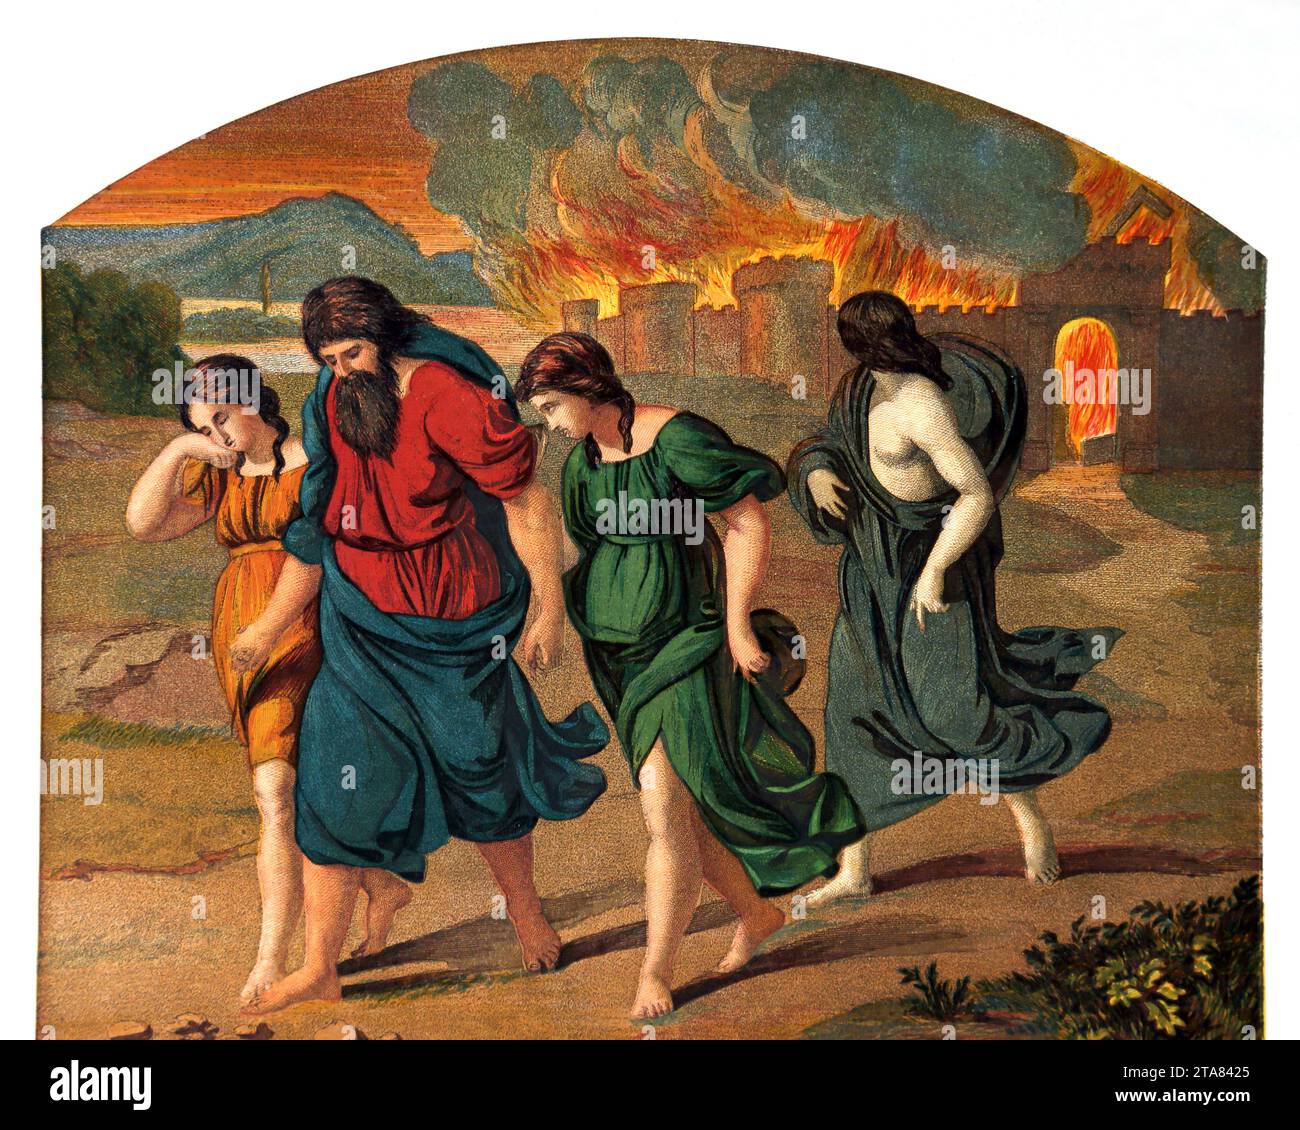 Illustrazione della fuga di Lot e della sua famiglia da Sodoma con la distruzione di Sodoma e Gomorra dietro (Genesi) dalla Bibbia illustrata della famiglia Foto Stock